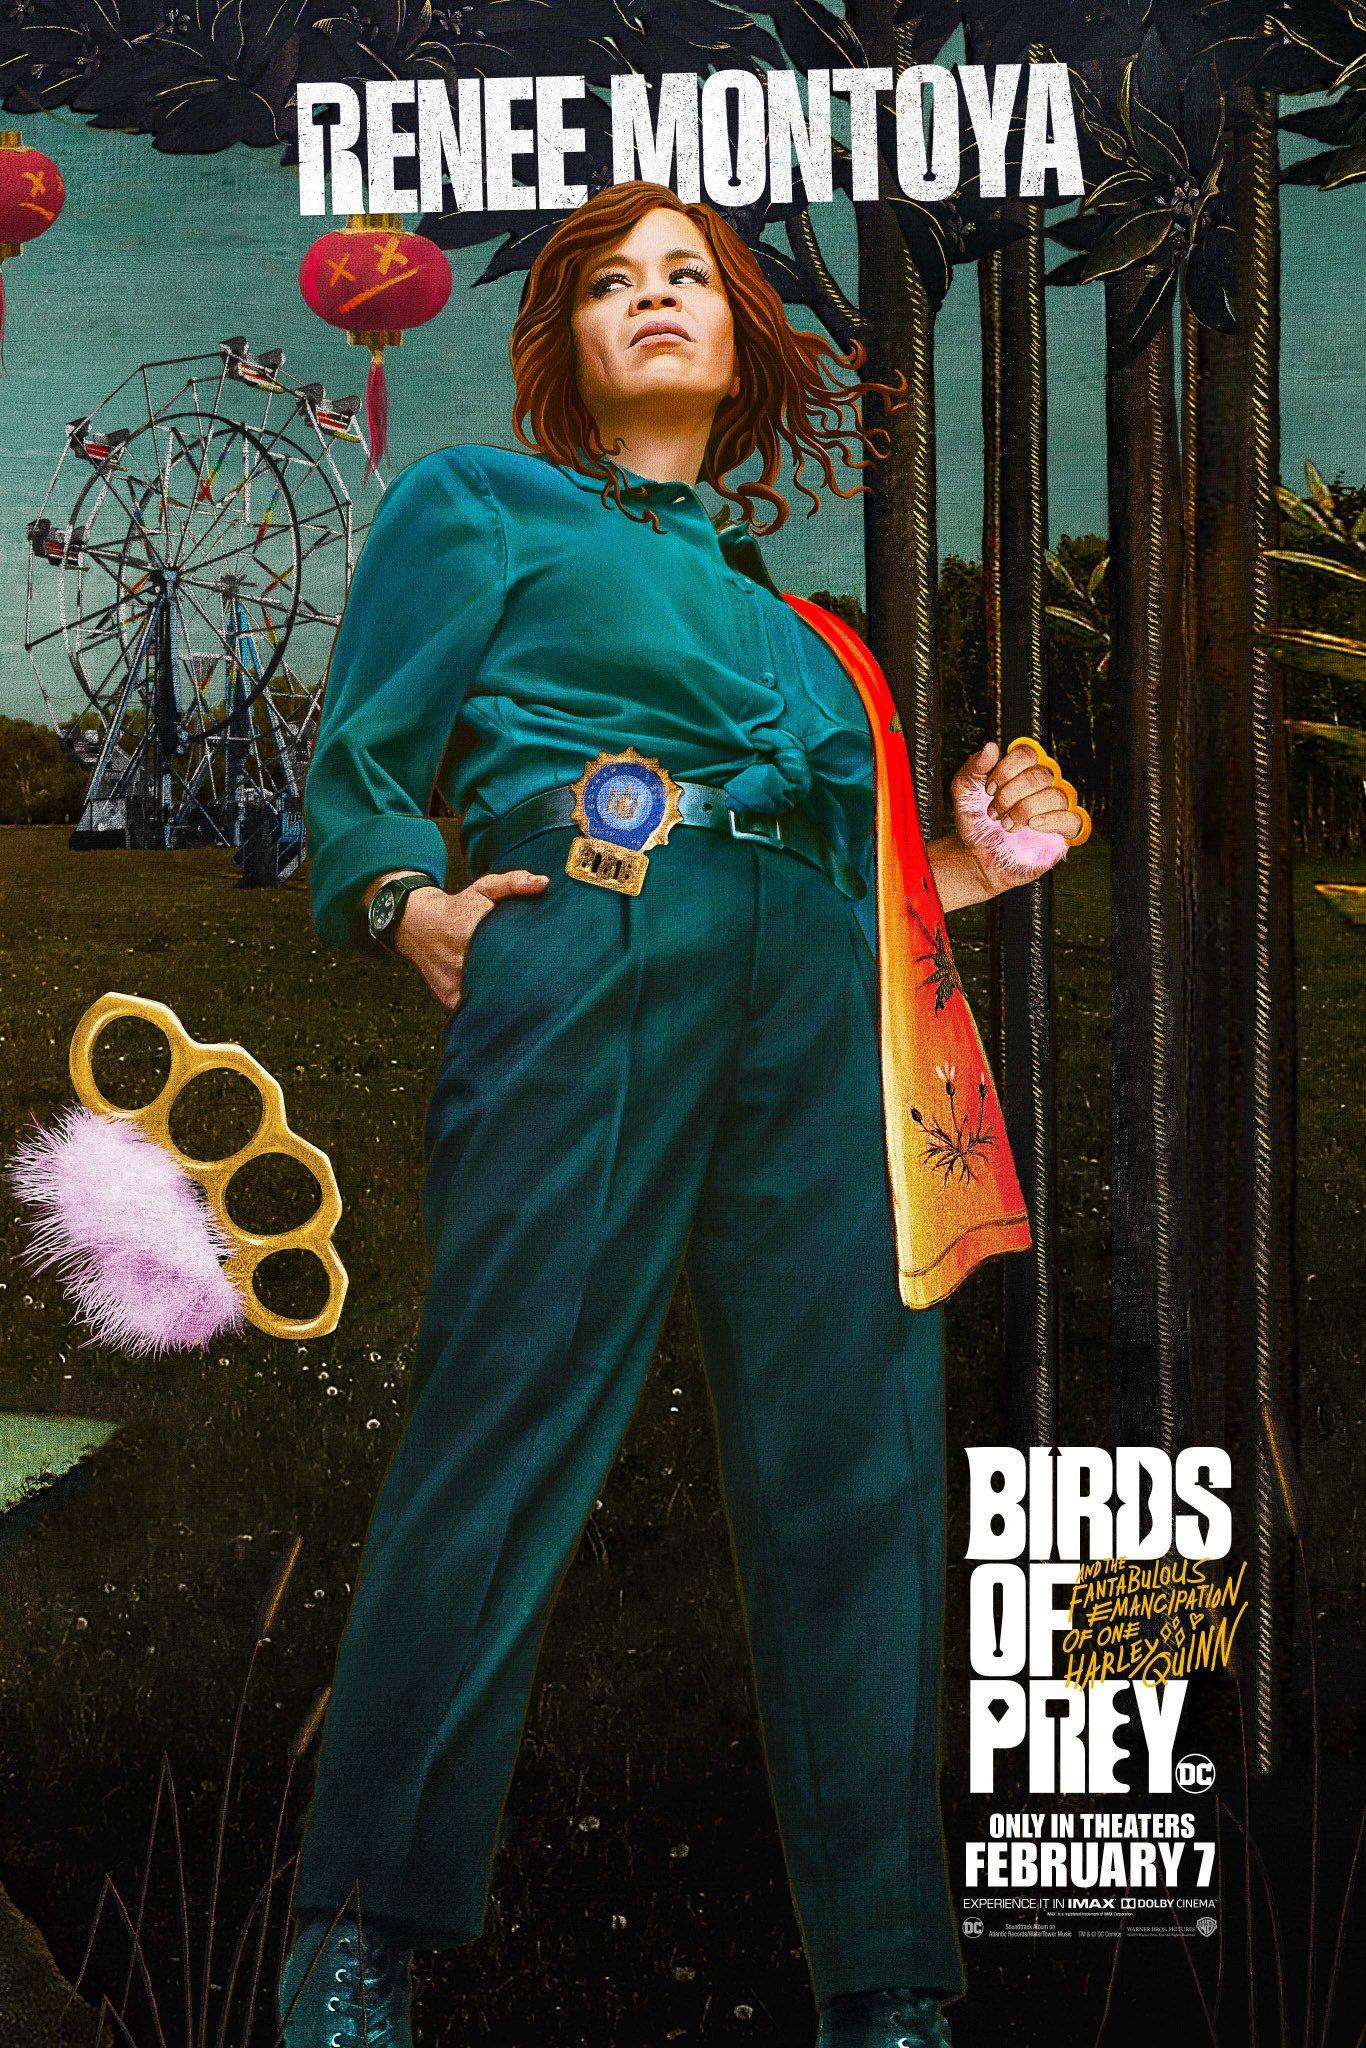 Warner Bros. releases new Birds of Prey character posters